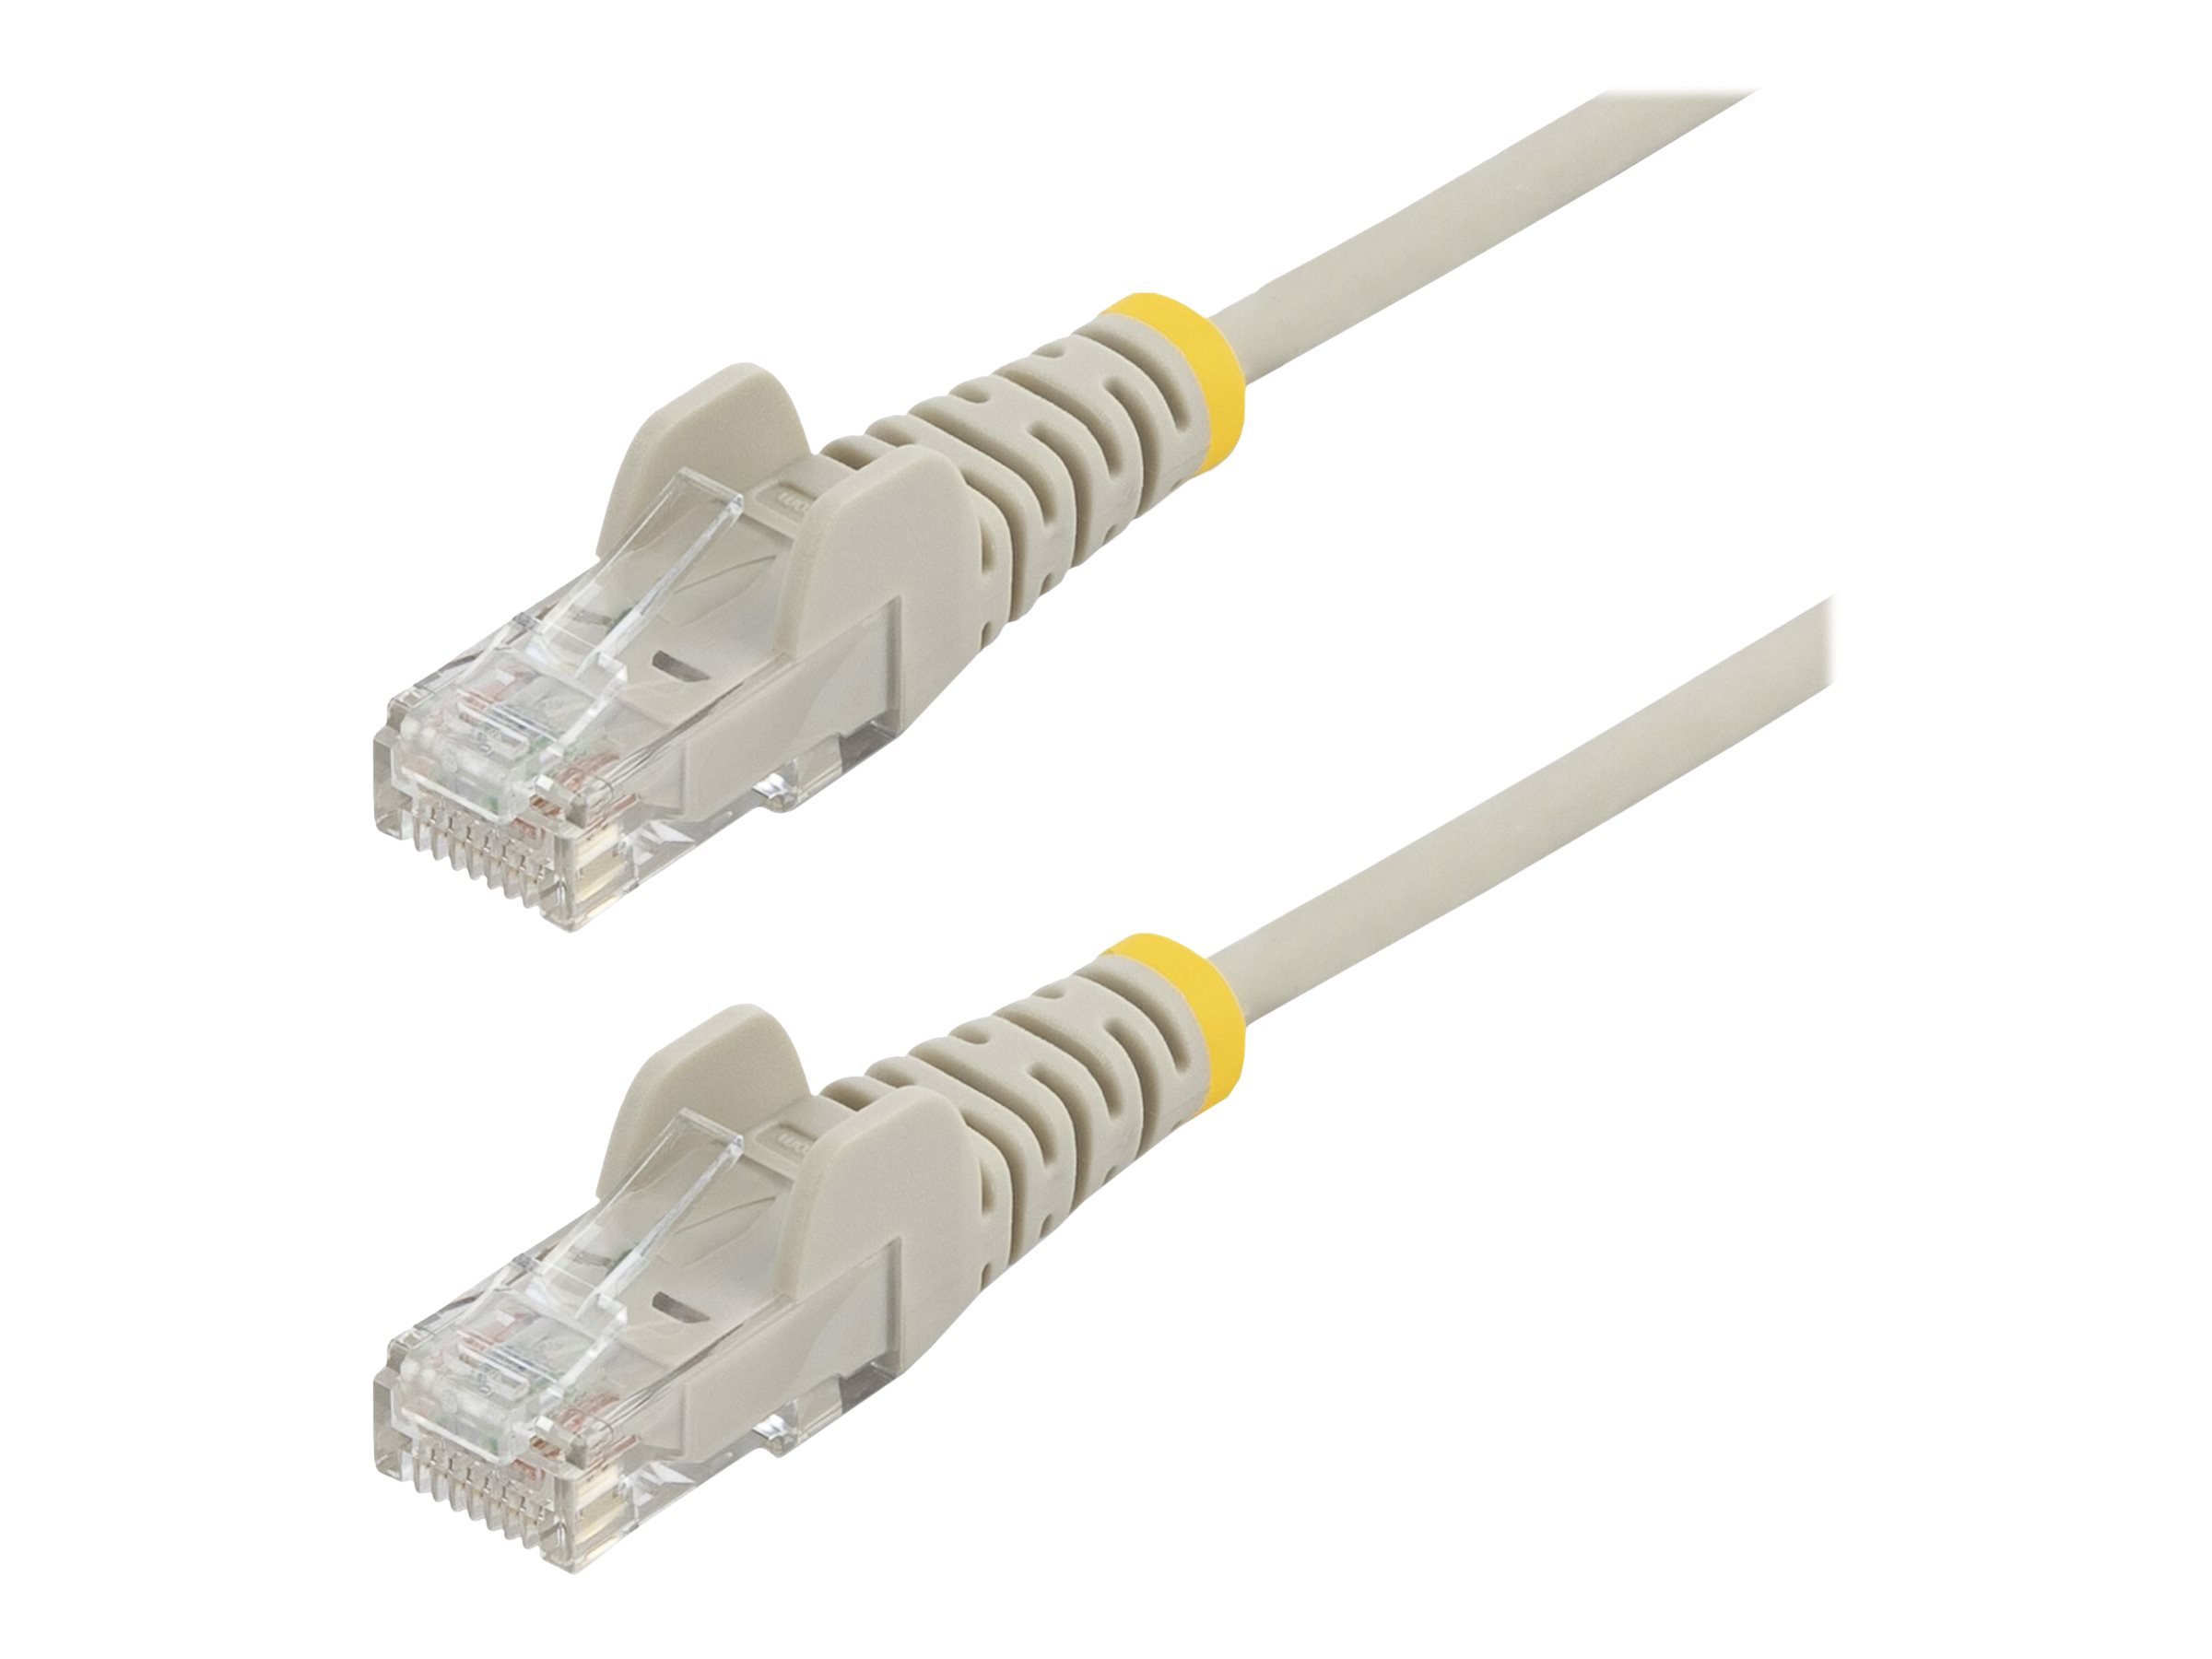 StarTech.com 50cm Slim LSZH CAT6 Ethernet Cable, 10 Gigabit Snagless RJ45 100W PoE Patch Cord, CAT 6 10GbE UTP Network Cable w/Strain Relief, Grey, Fluke Tested/ETL, Low Smoke Zero Halogen - Category 6 - 28AWG (N6PAT50CMGRS) - Cordon de raccordement - RJ-45 (M) pour RJ-45 (M) - 50 cm - CAT 6 - sans crochet - gris - N6PAT50CMGRS - Câbles à paire torsadée